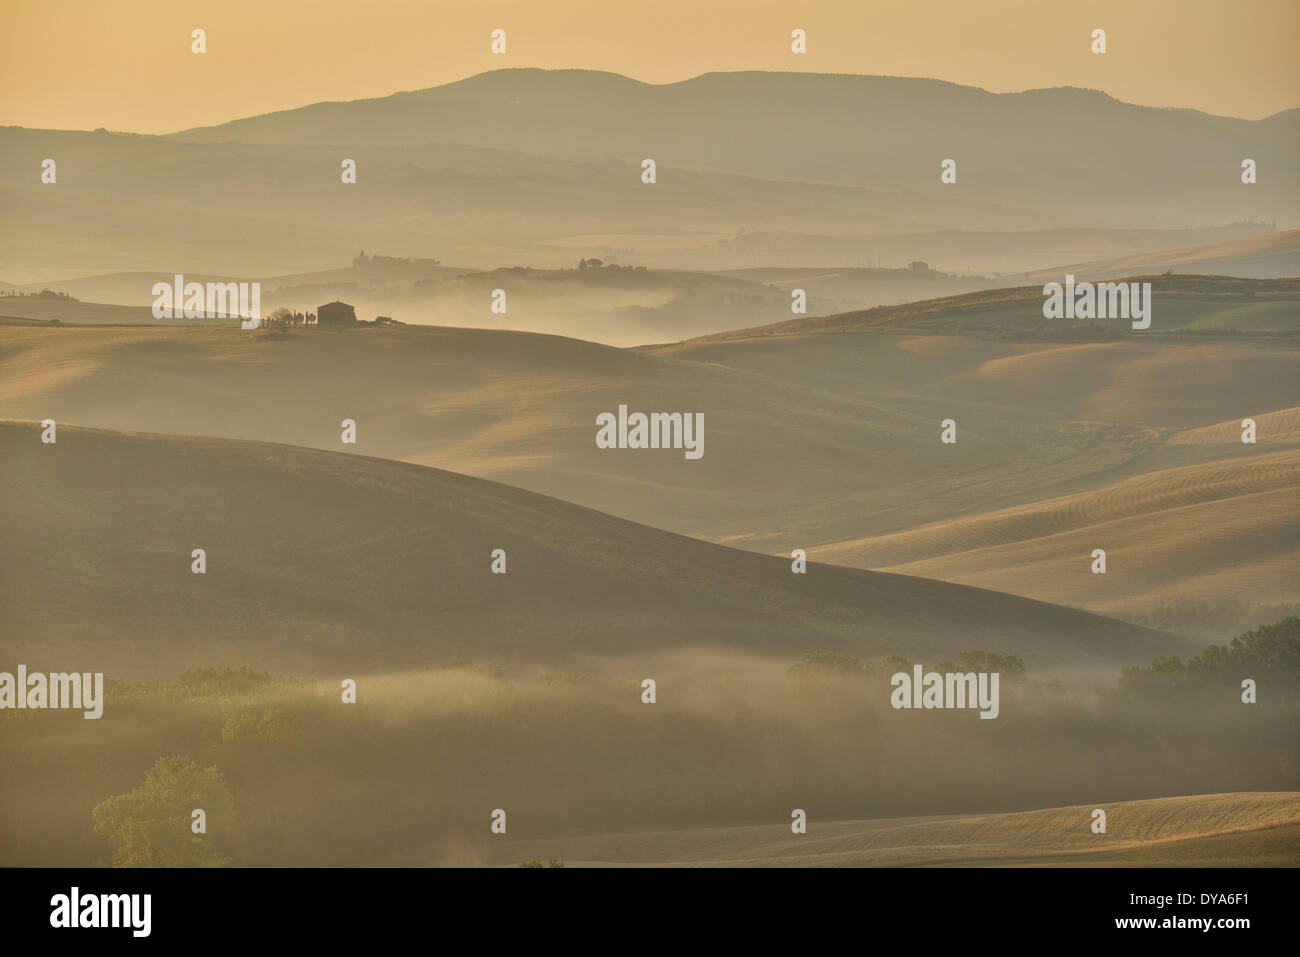 Europa Mediterraneo italiano italia Toscana provincia di Siena mattina presto umore nebbia nebbia nebbia mattutina alberi valle paesaggio co Foto Stock